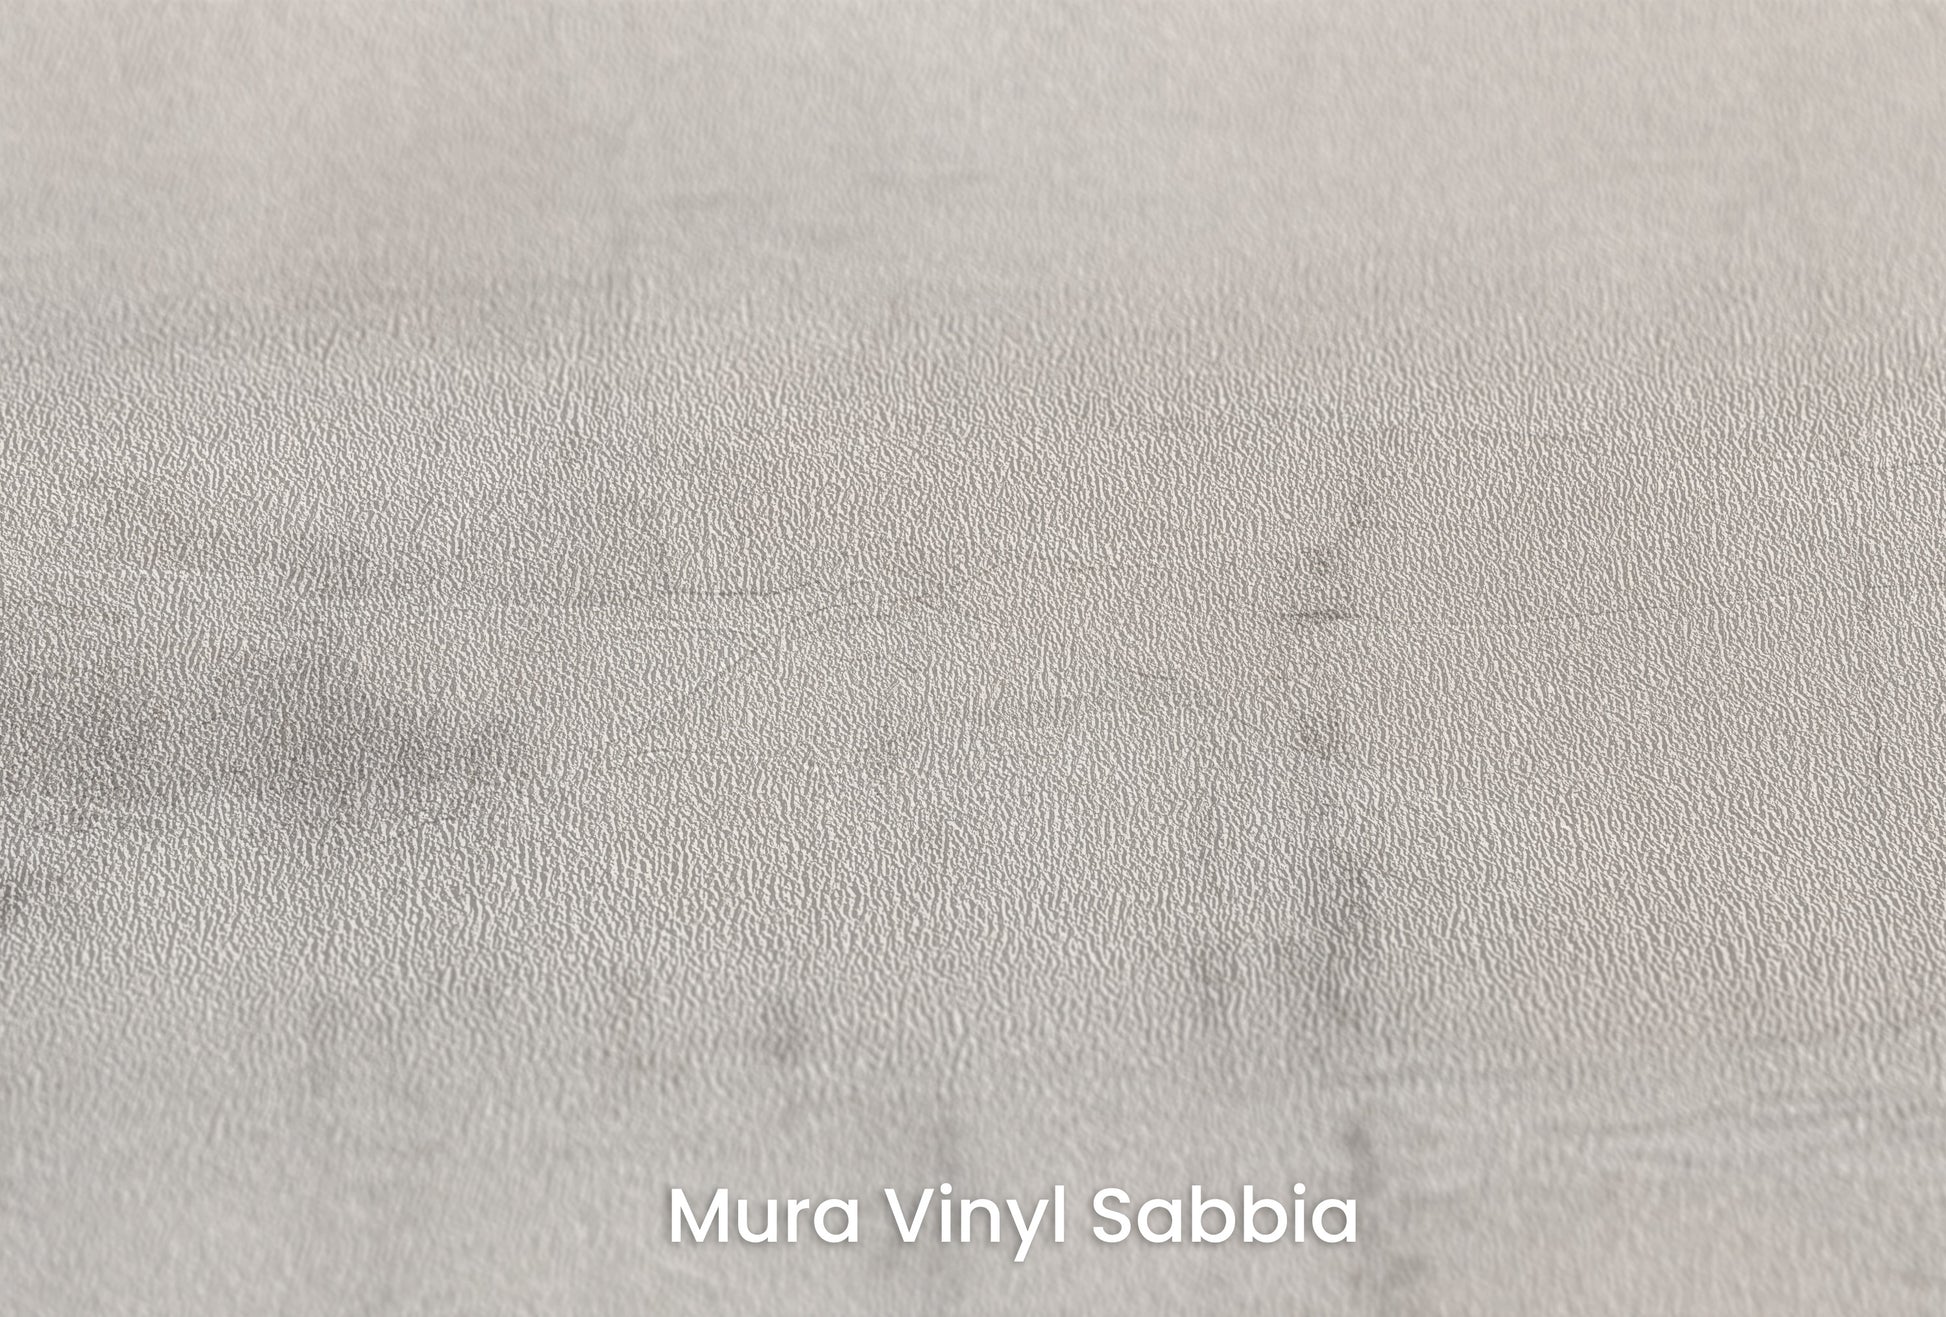 Zbliżenie na artystyczną fototapetę o nazwie MONOCHROME MIST na podłożu Mura Vinyl Sabbia struktura grubego ziarna piasku.